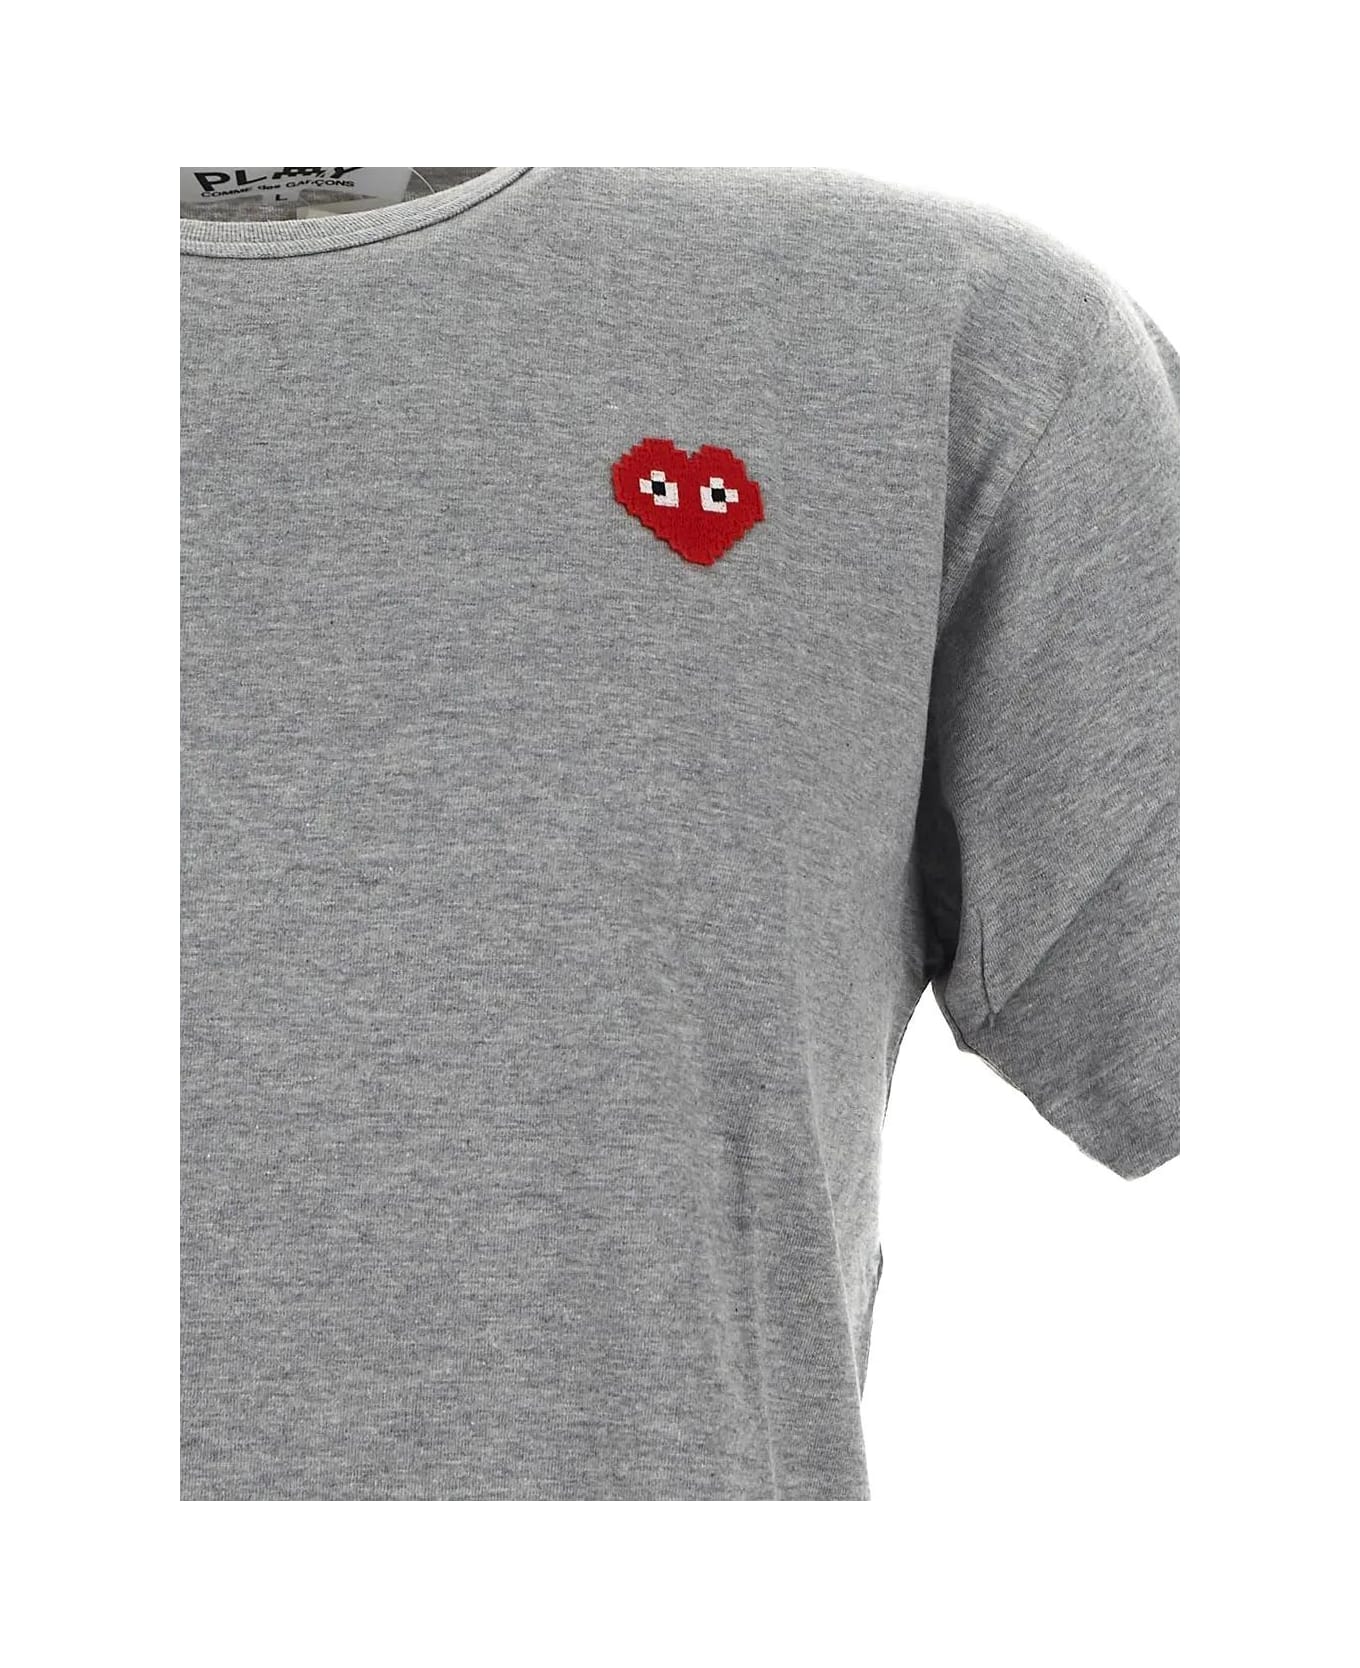 Comme des Garçons Shirt Boy Logo Embroidery T-shirt - Grey シャツ